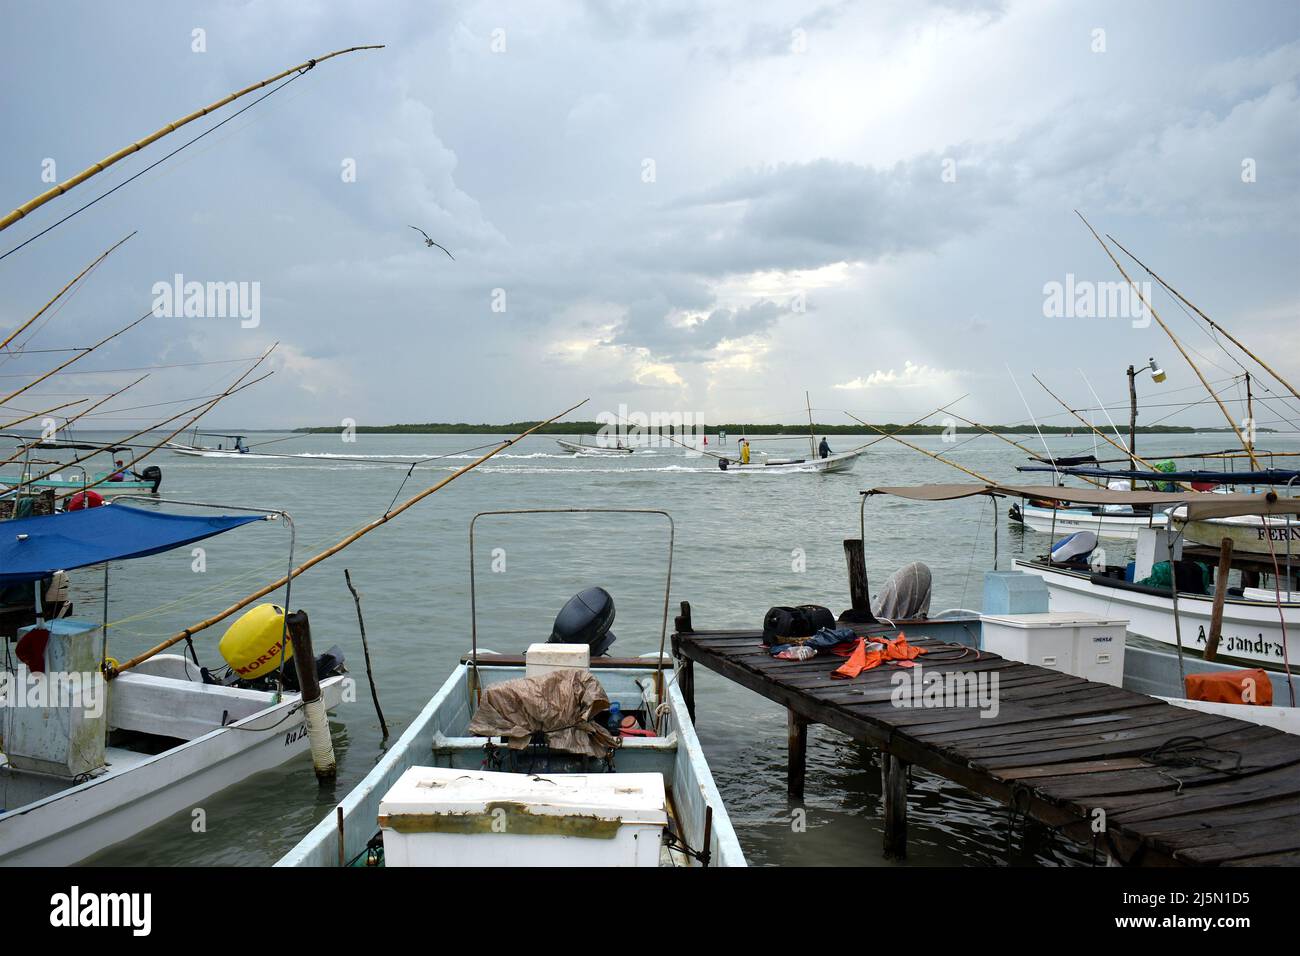 Rio Lagartos, Mexico - September 8, 2021: Fishing boats anchor on the shore outside the village of Rio Lagartos on the northern Yucatán Peninsula, Mexico Stock Photo